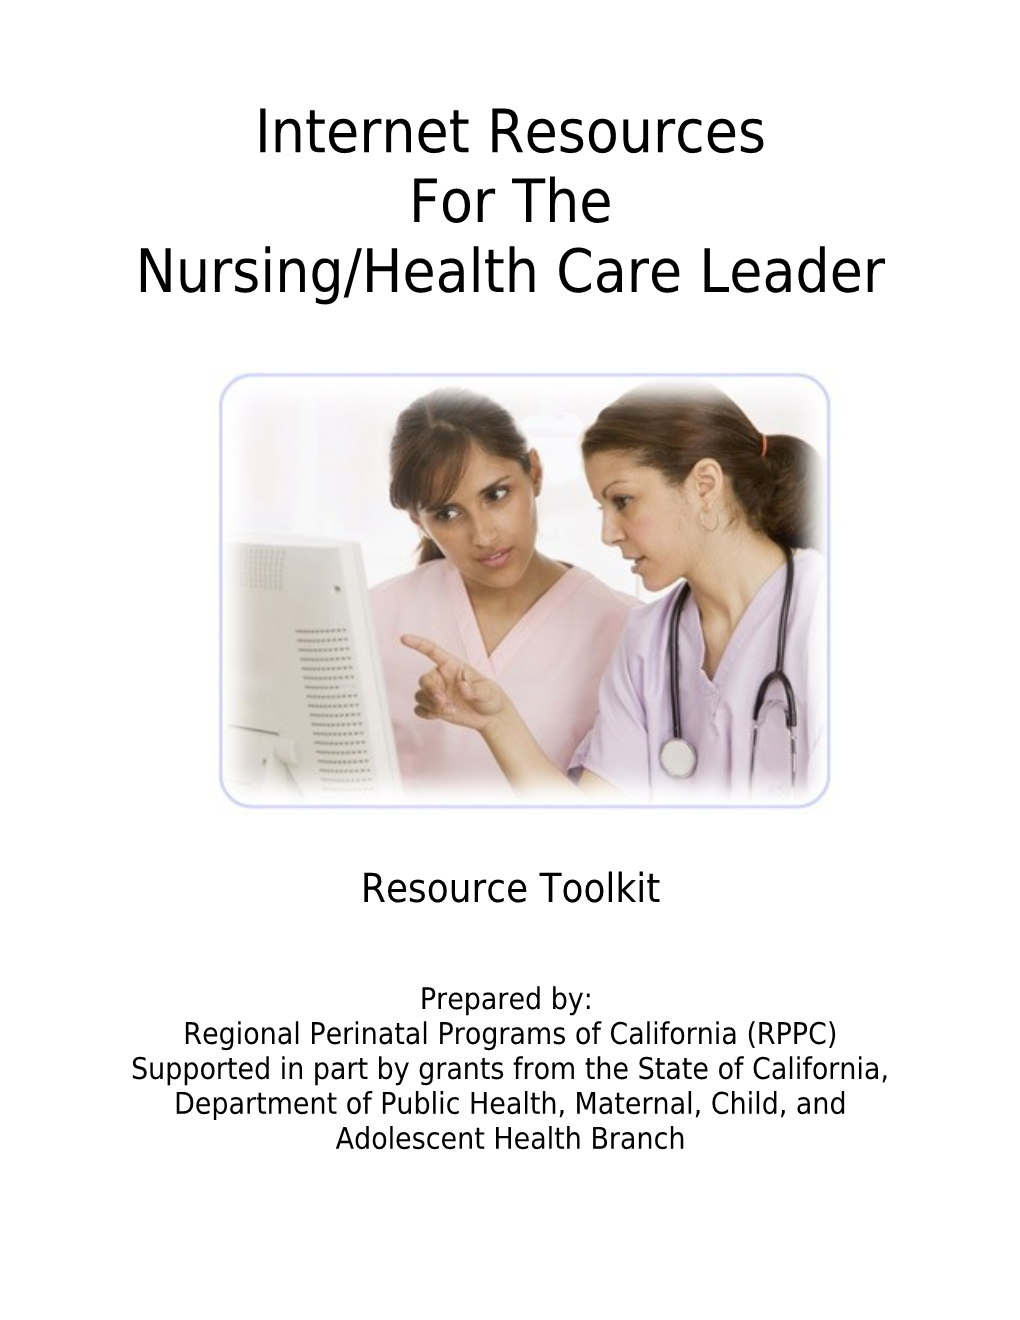 Internet Resources Forthe Nursing/Health Care Leader